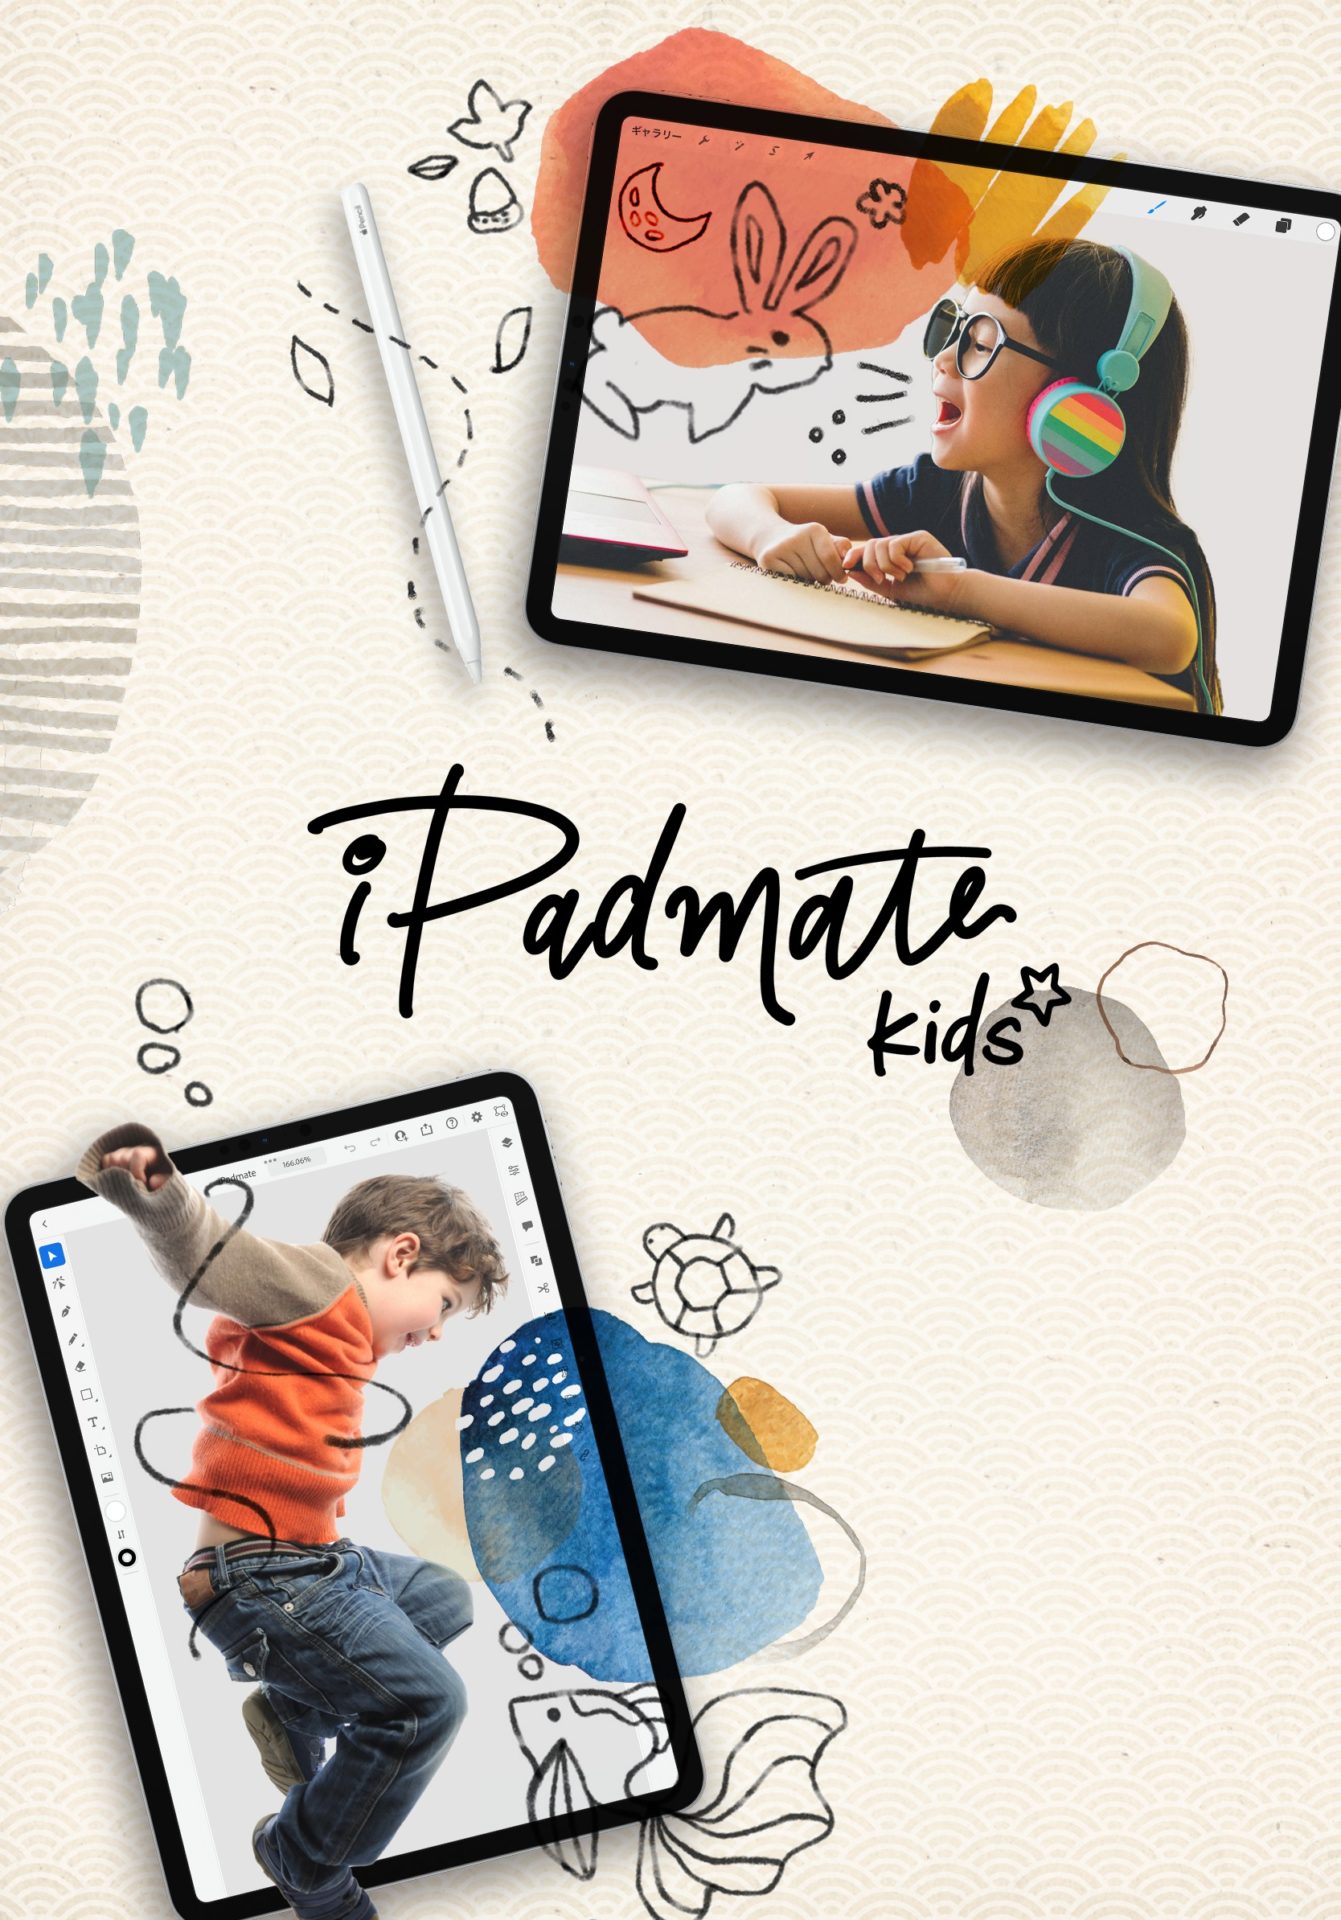 小学生向けiPadクリエイティブスクール「iPadmate kids」開校